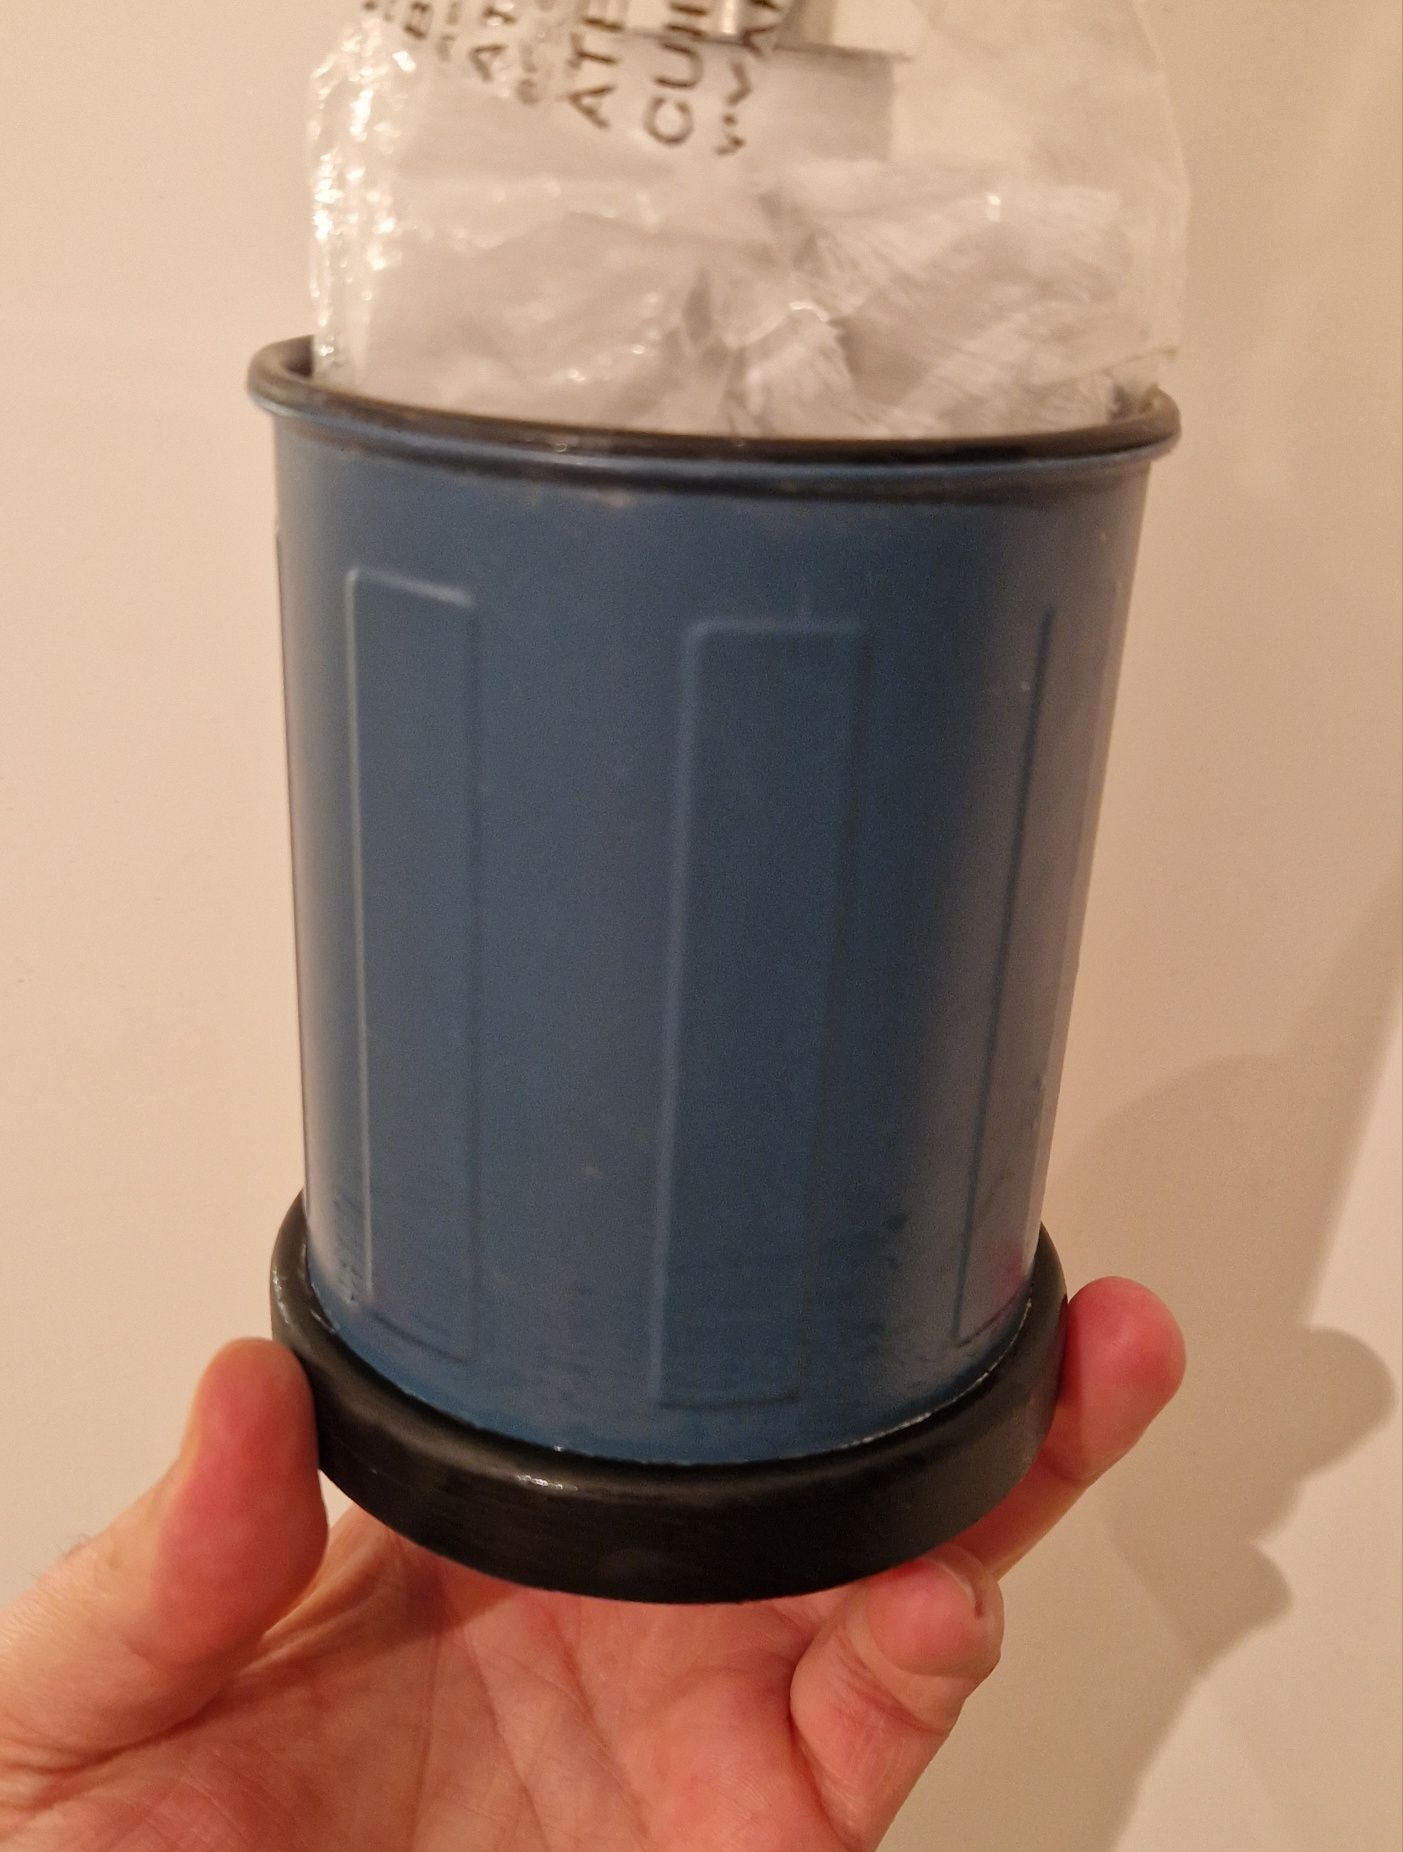 [IKEA] Kosz łazienkowy (na śmieci) + stojak na szczotkę do WC